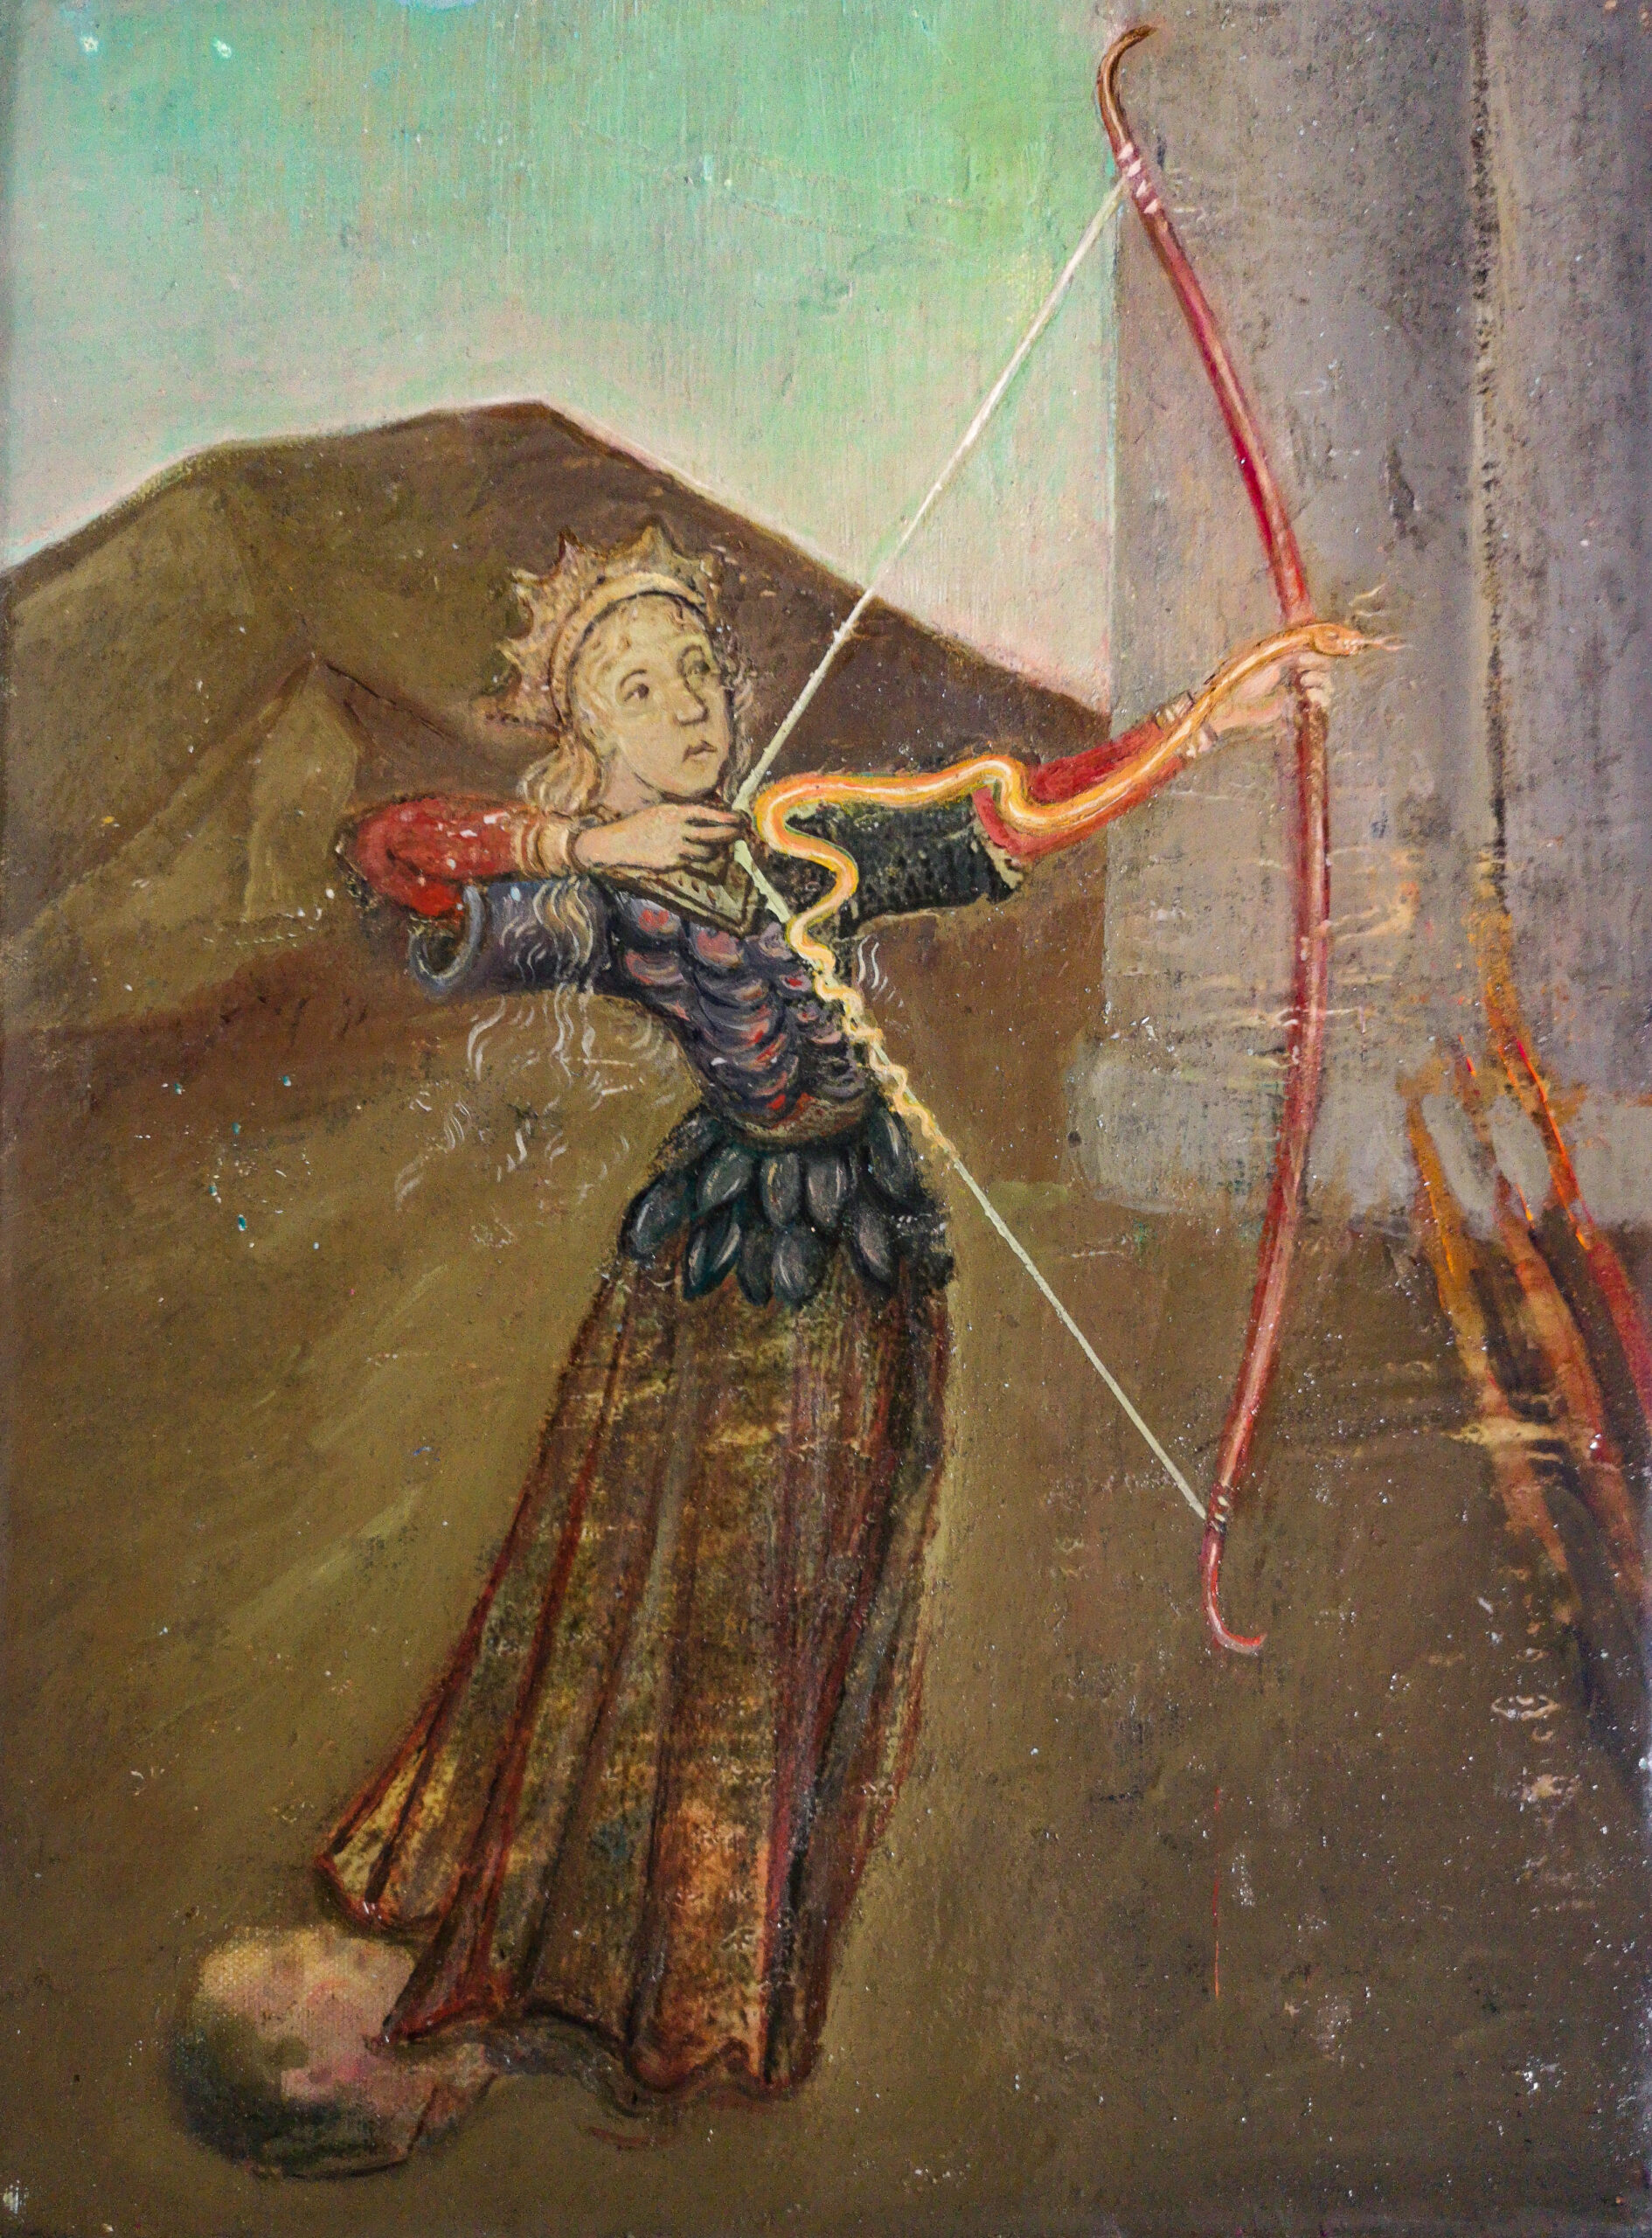 Thulsa Doom snake arrows, 2019, oil on canvas, 30 x 42 cm